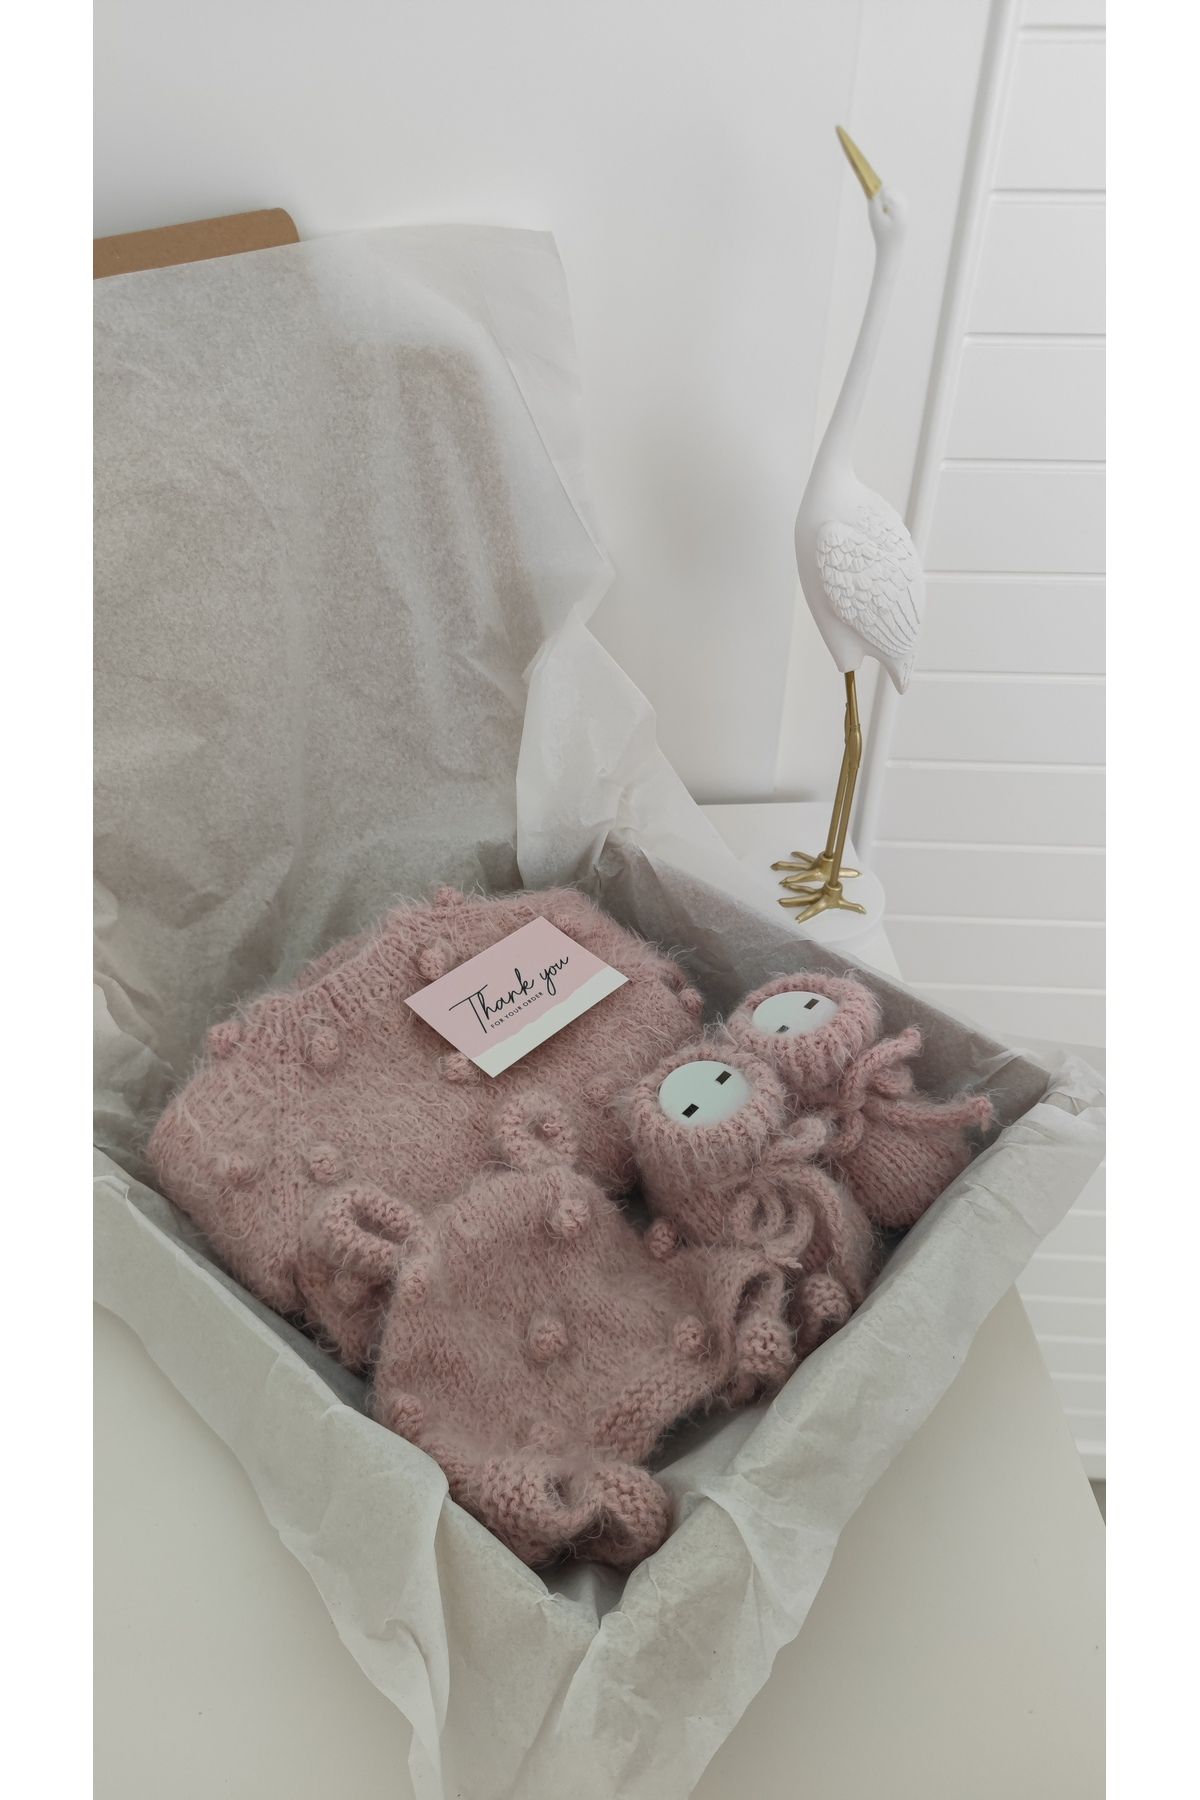 Sincabın Düşleri Hoşgeldin bebek yenidoğan bebek hediye seti kutusu hastane çıkışı triko örgü tulum patik